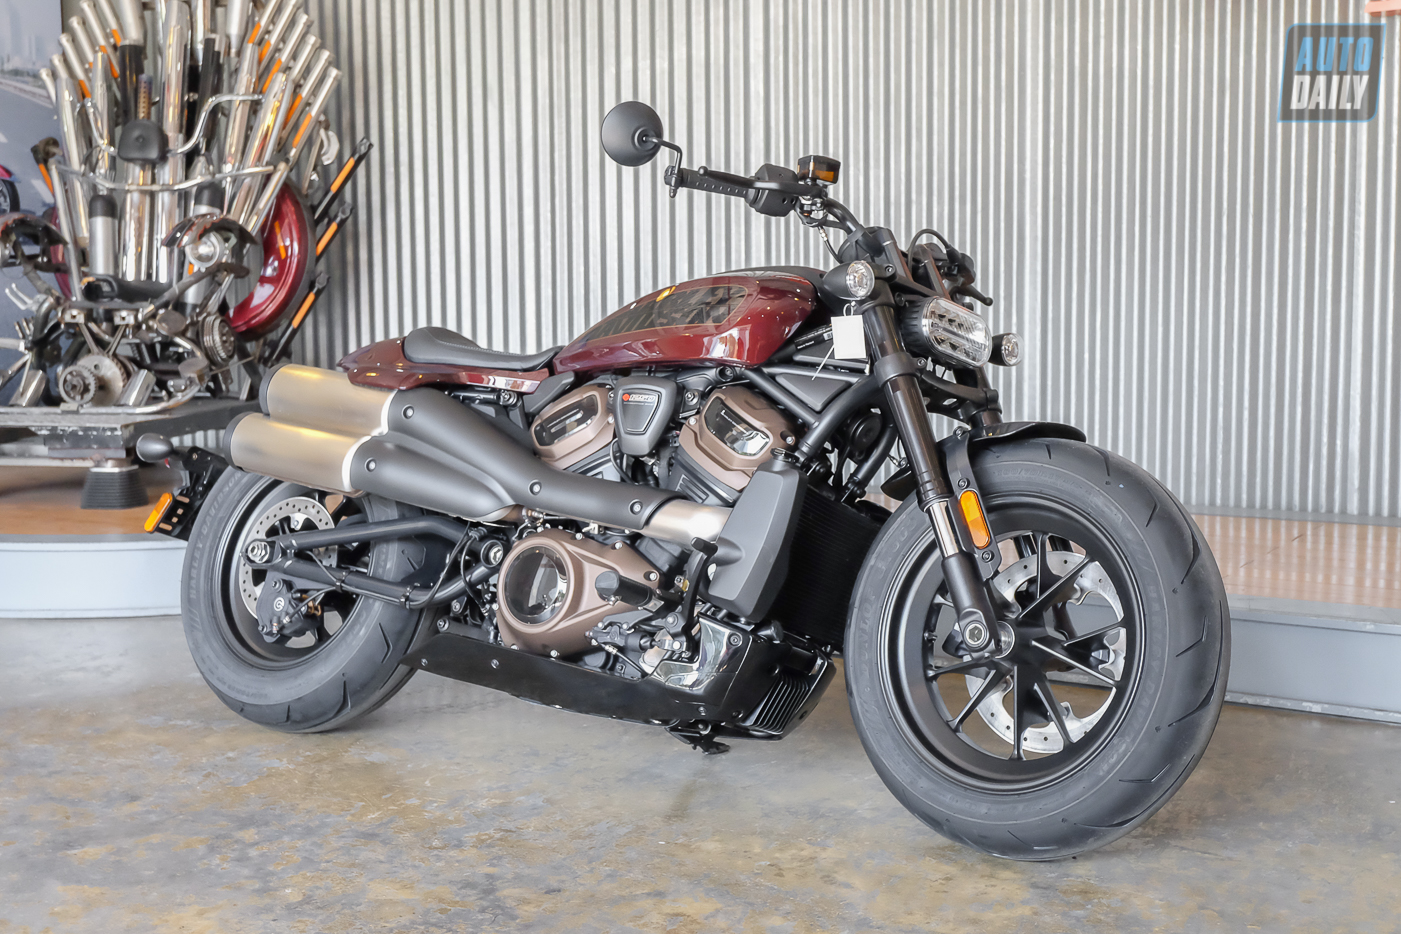 Cận cảnh Harley-Davidson Sportster S giá từ 589 triệu đồng tại Việt Nam Harley-Davidson Sportster S (4).jpg